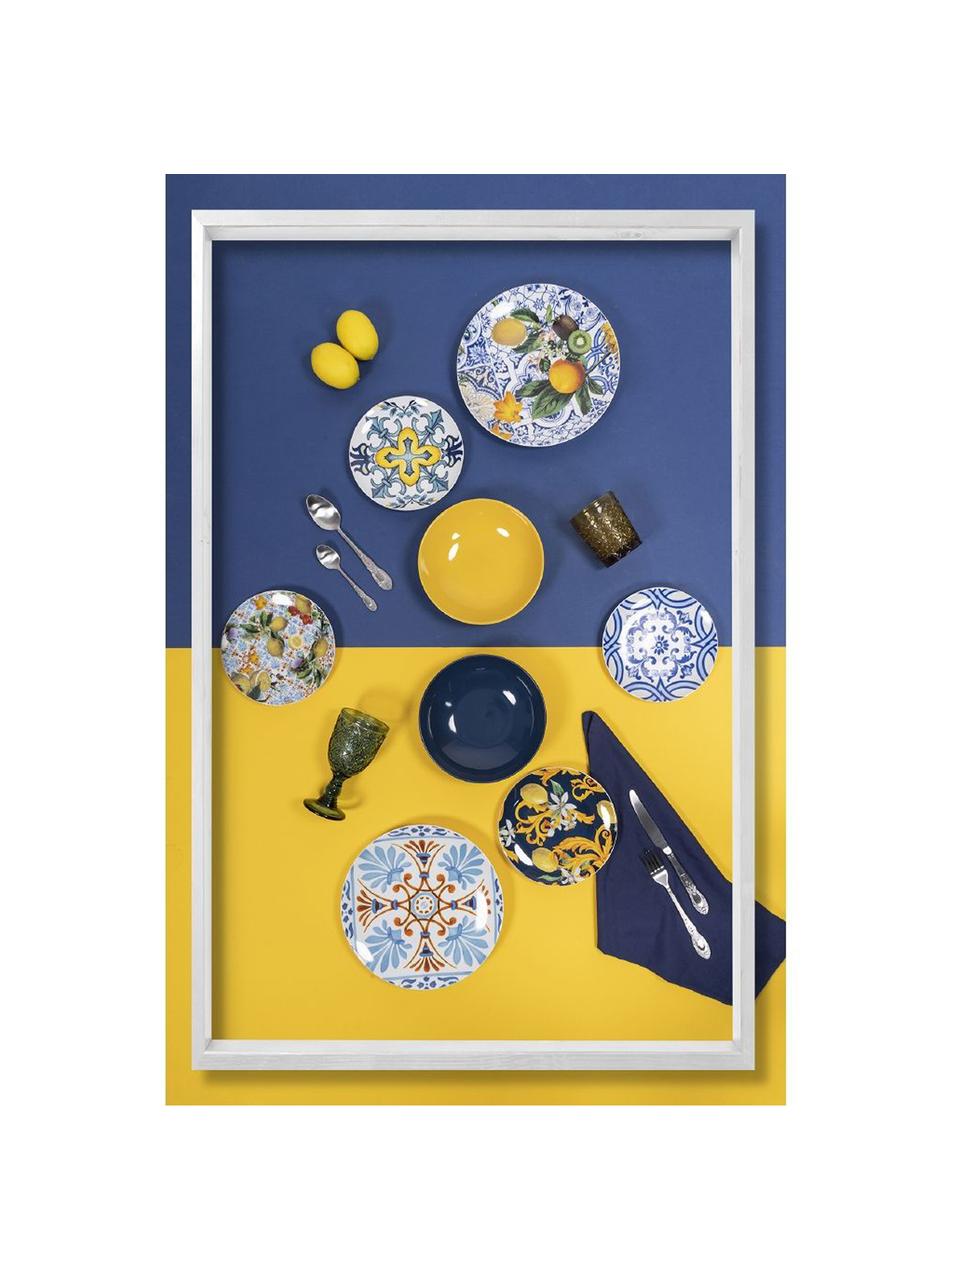 Geschirr-Set Italian Beauty mit bunten Designs, 6 Personen (18er-Set), Porzellan, Weiß, Gelb- und Blautöne, 6 Personen (18er-Set)